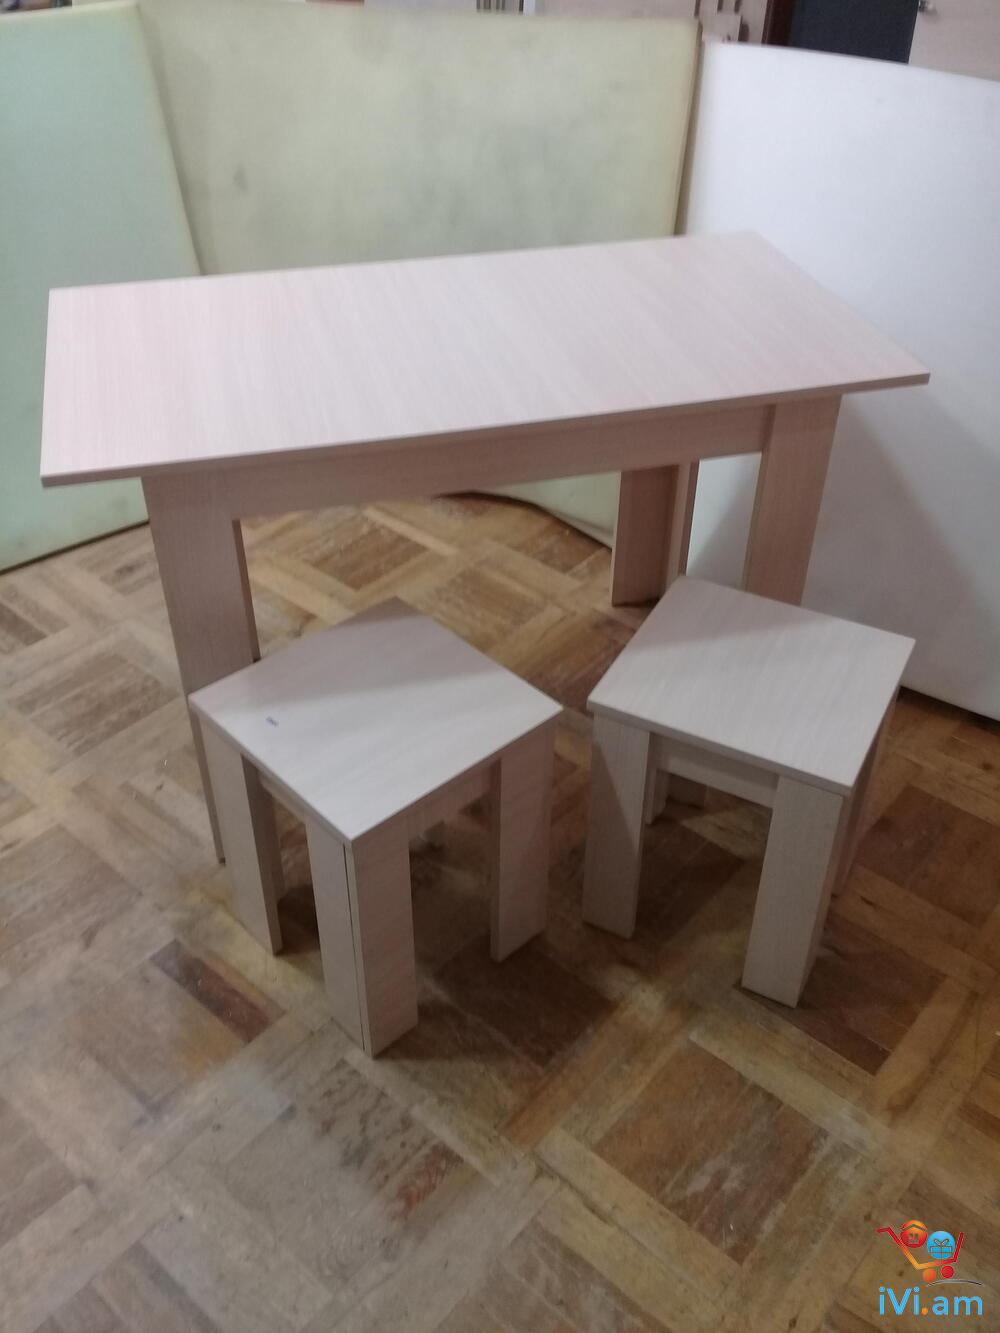 Խոհանոցի սեղան աթոռներ - Լուսանկար 1